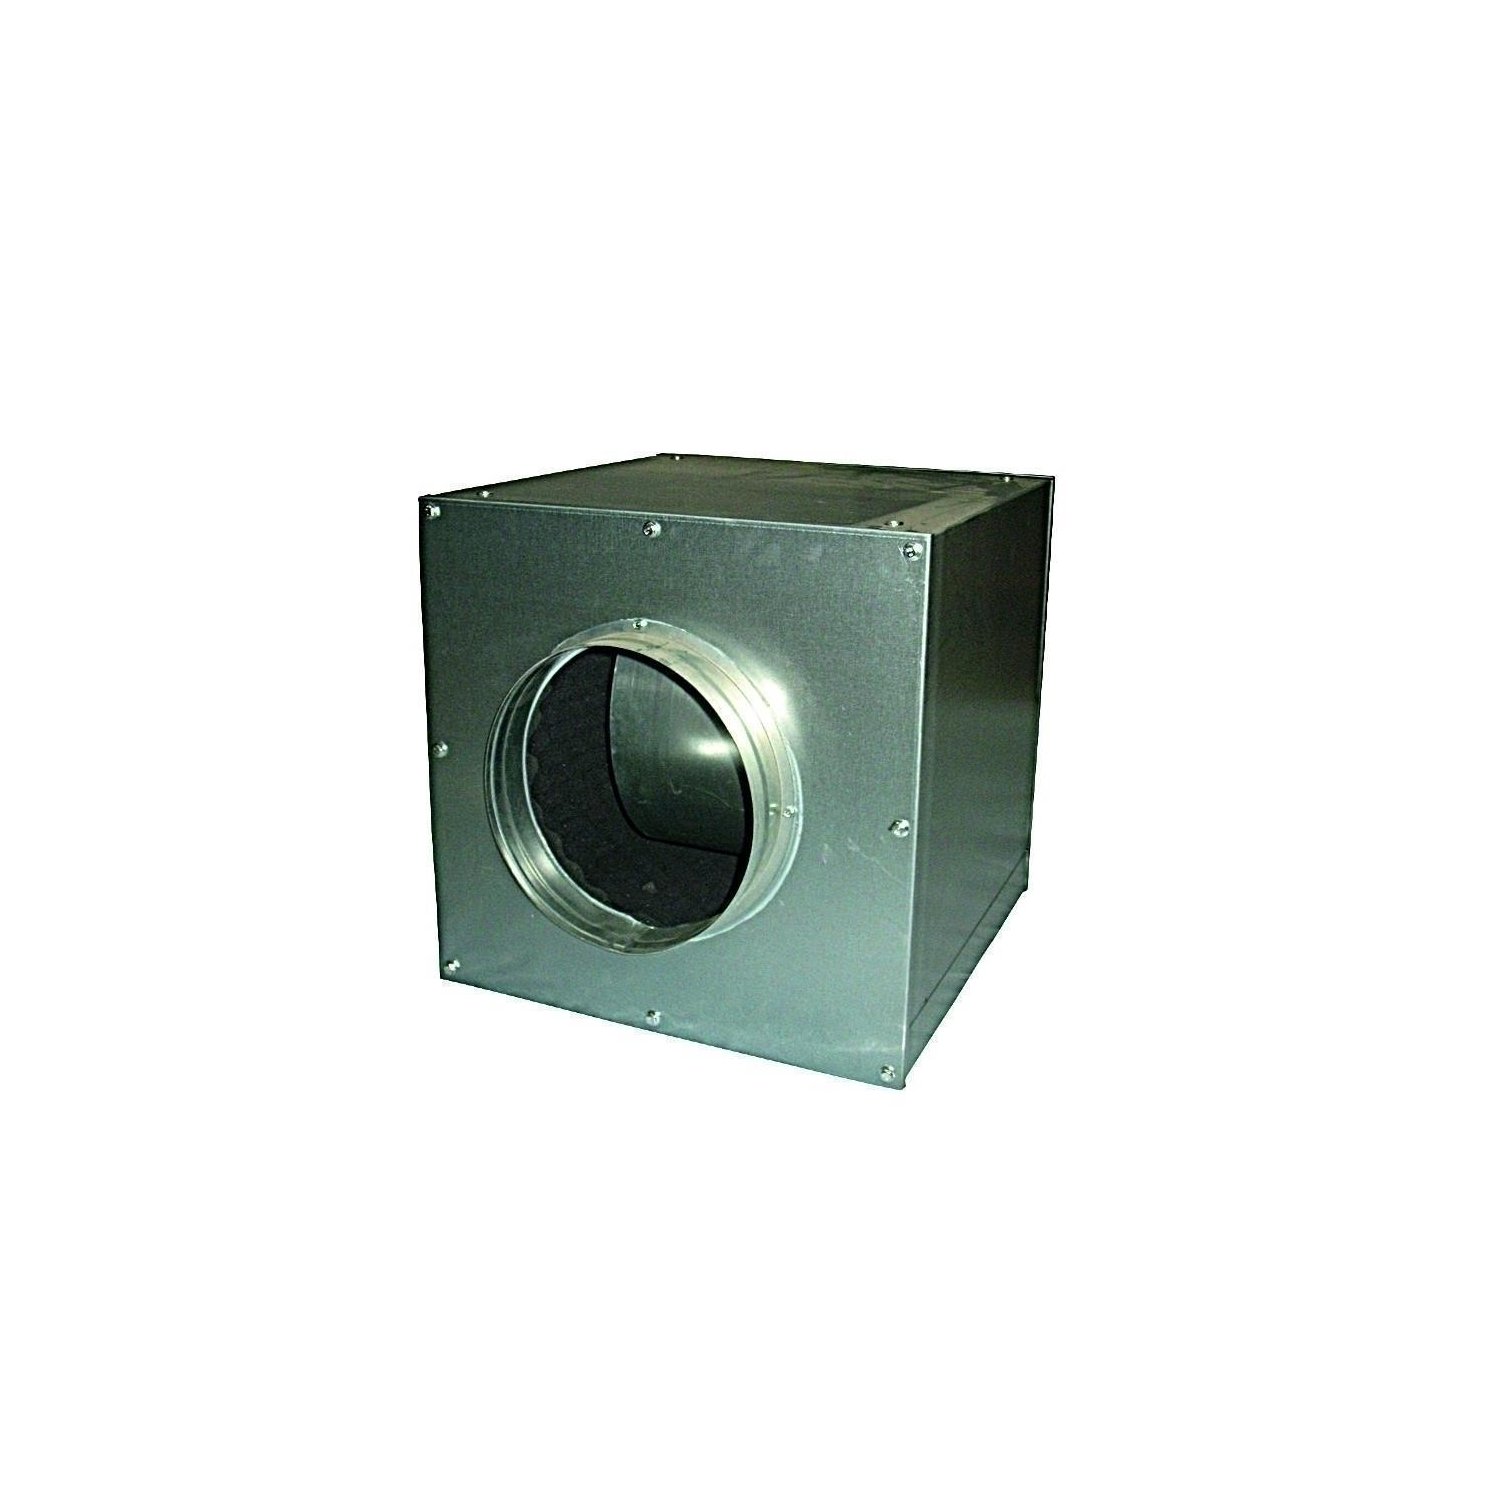 Cultivalley AC Lüfterbox 3250m-h aufgehangen Metall unter Luft & Wasser > Lüftung > Lüfter